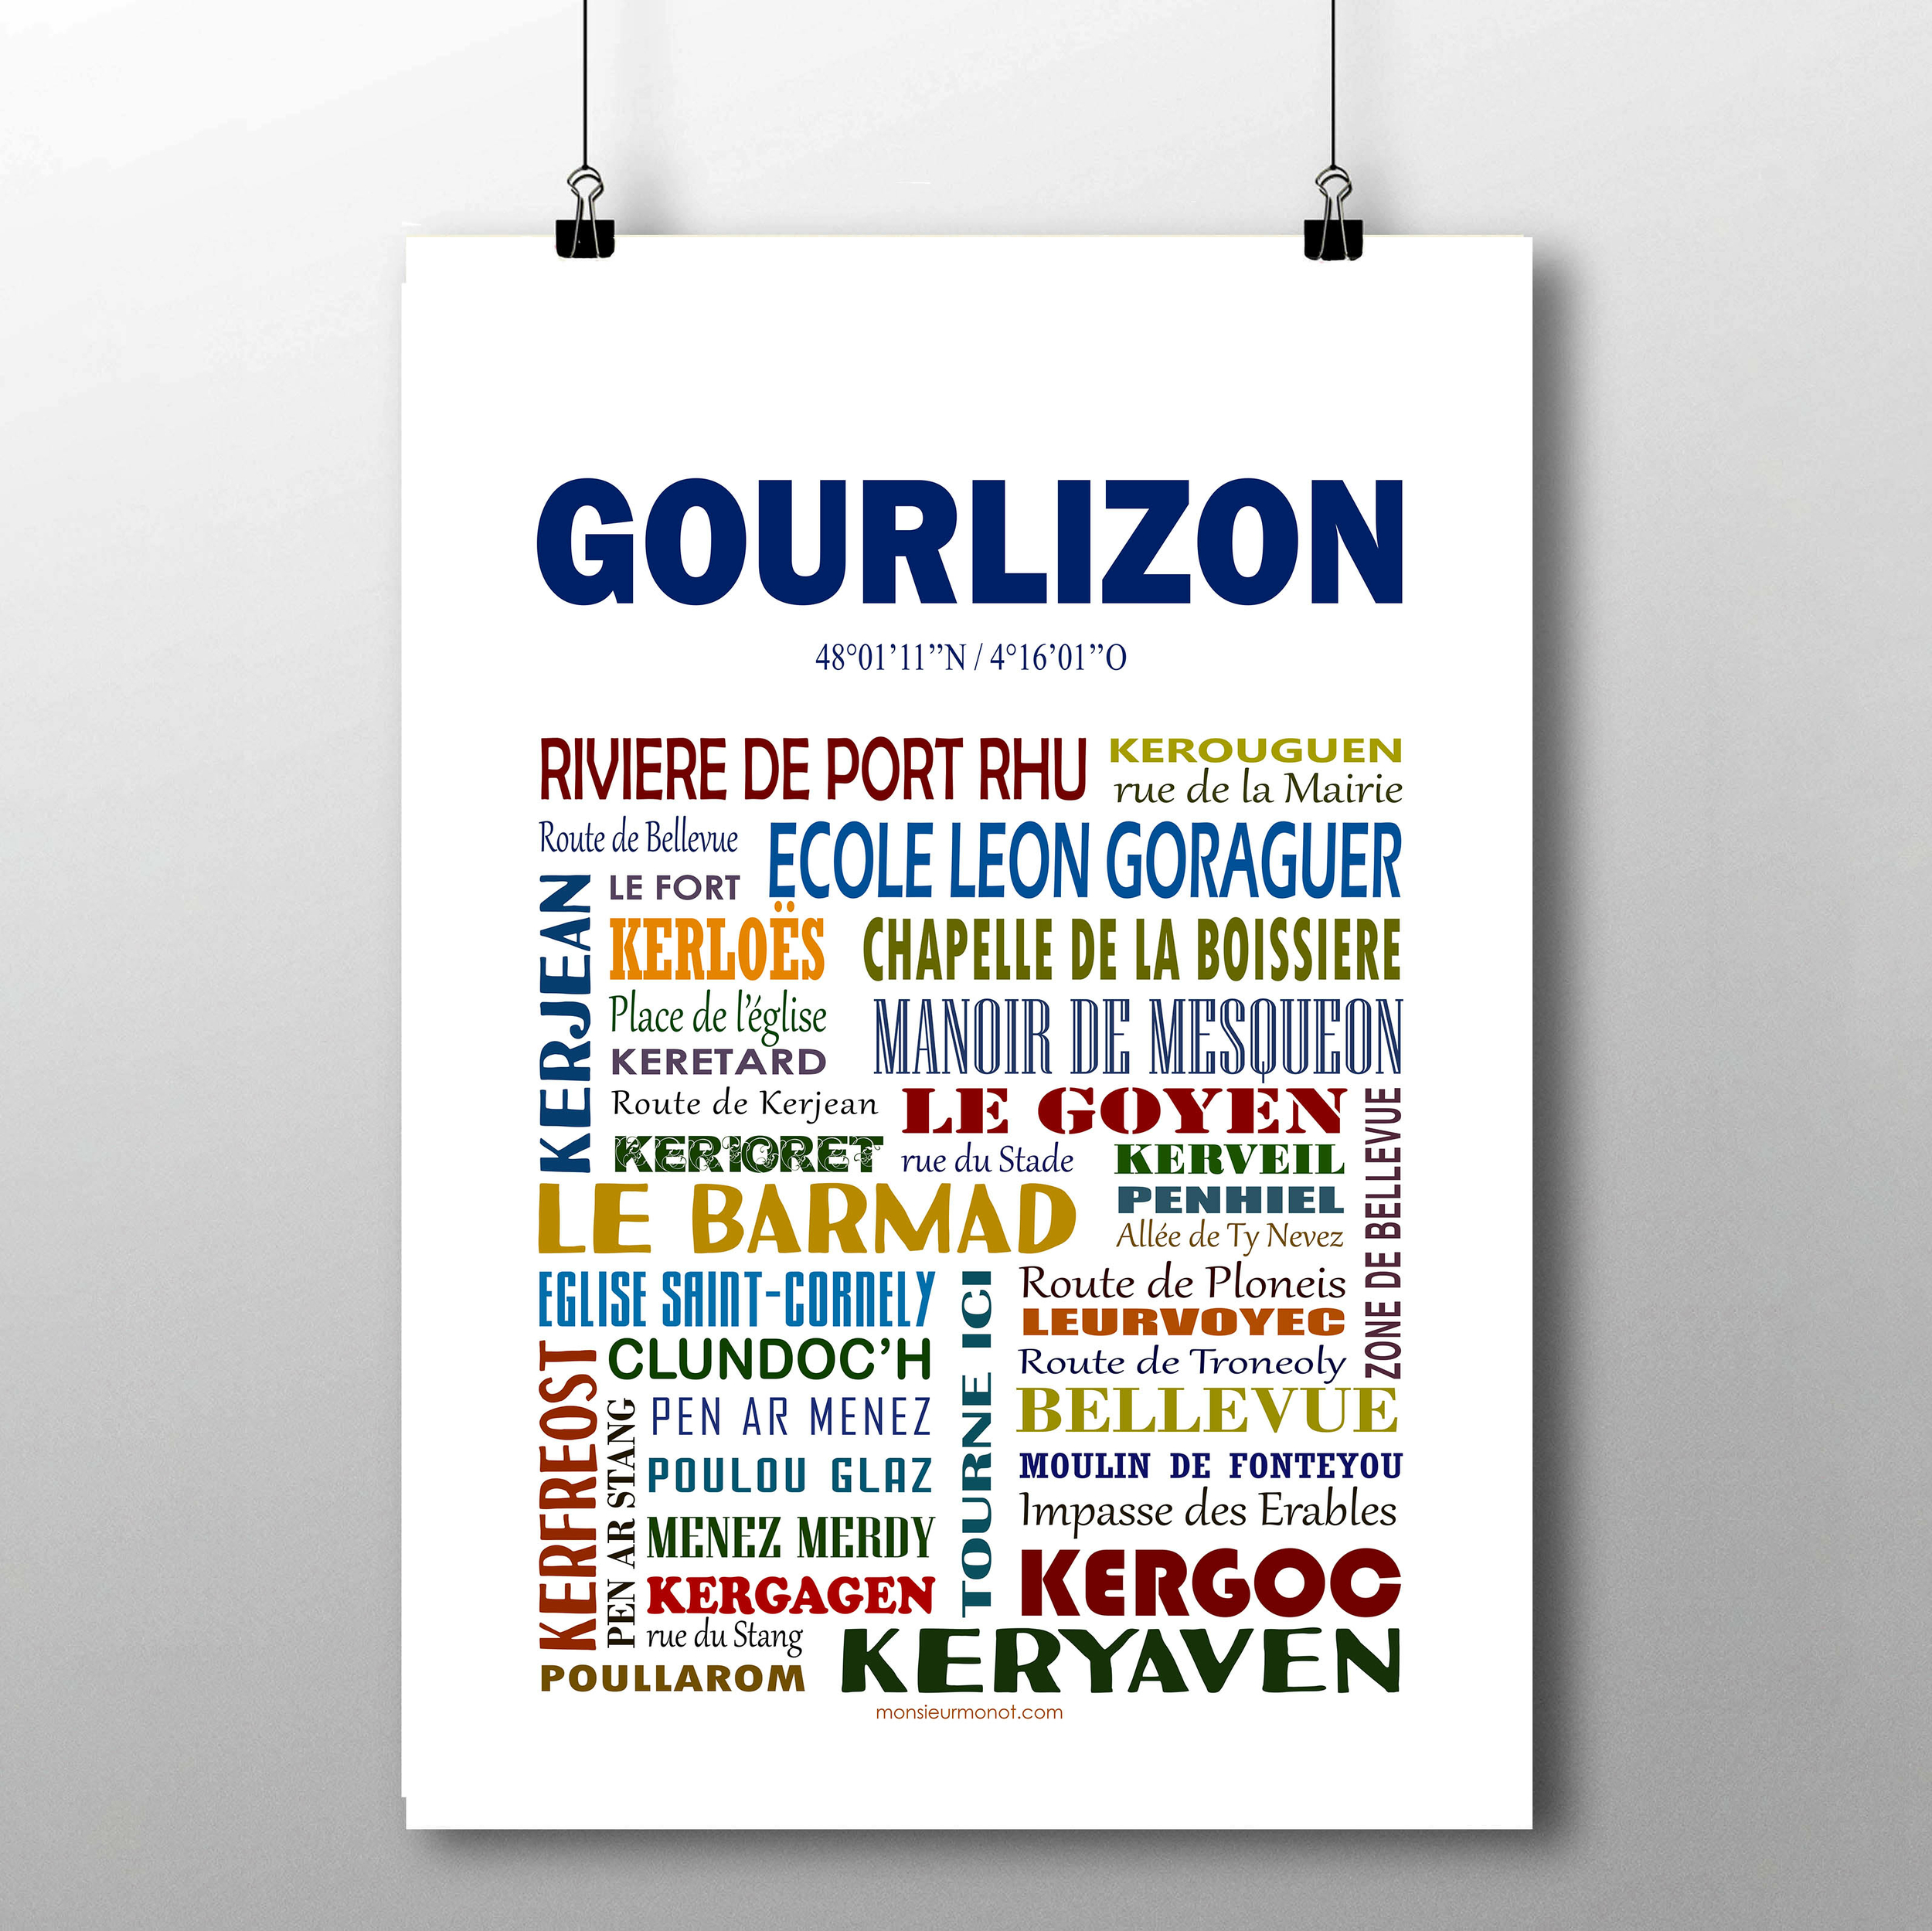 gourlizon 1